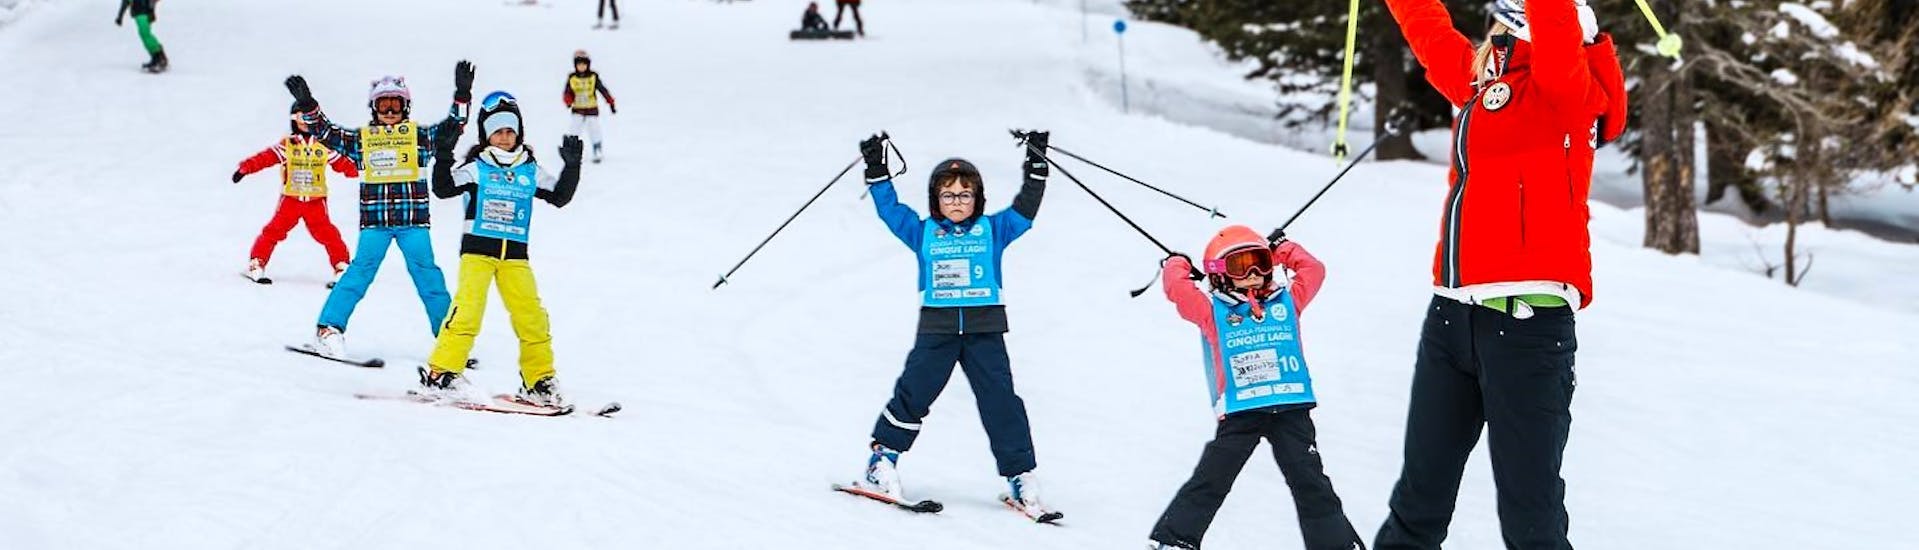 Lezioni di sci per bambini (4-13 anni) per tutti i livelli.